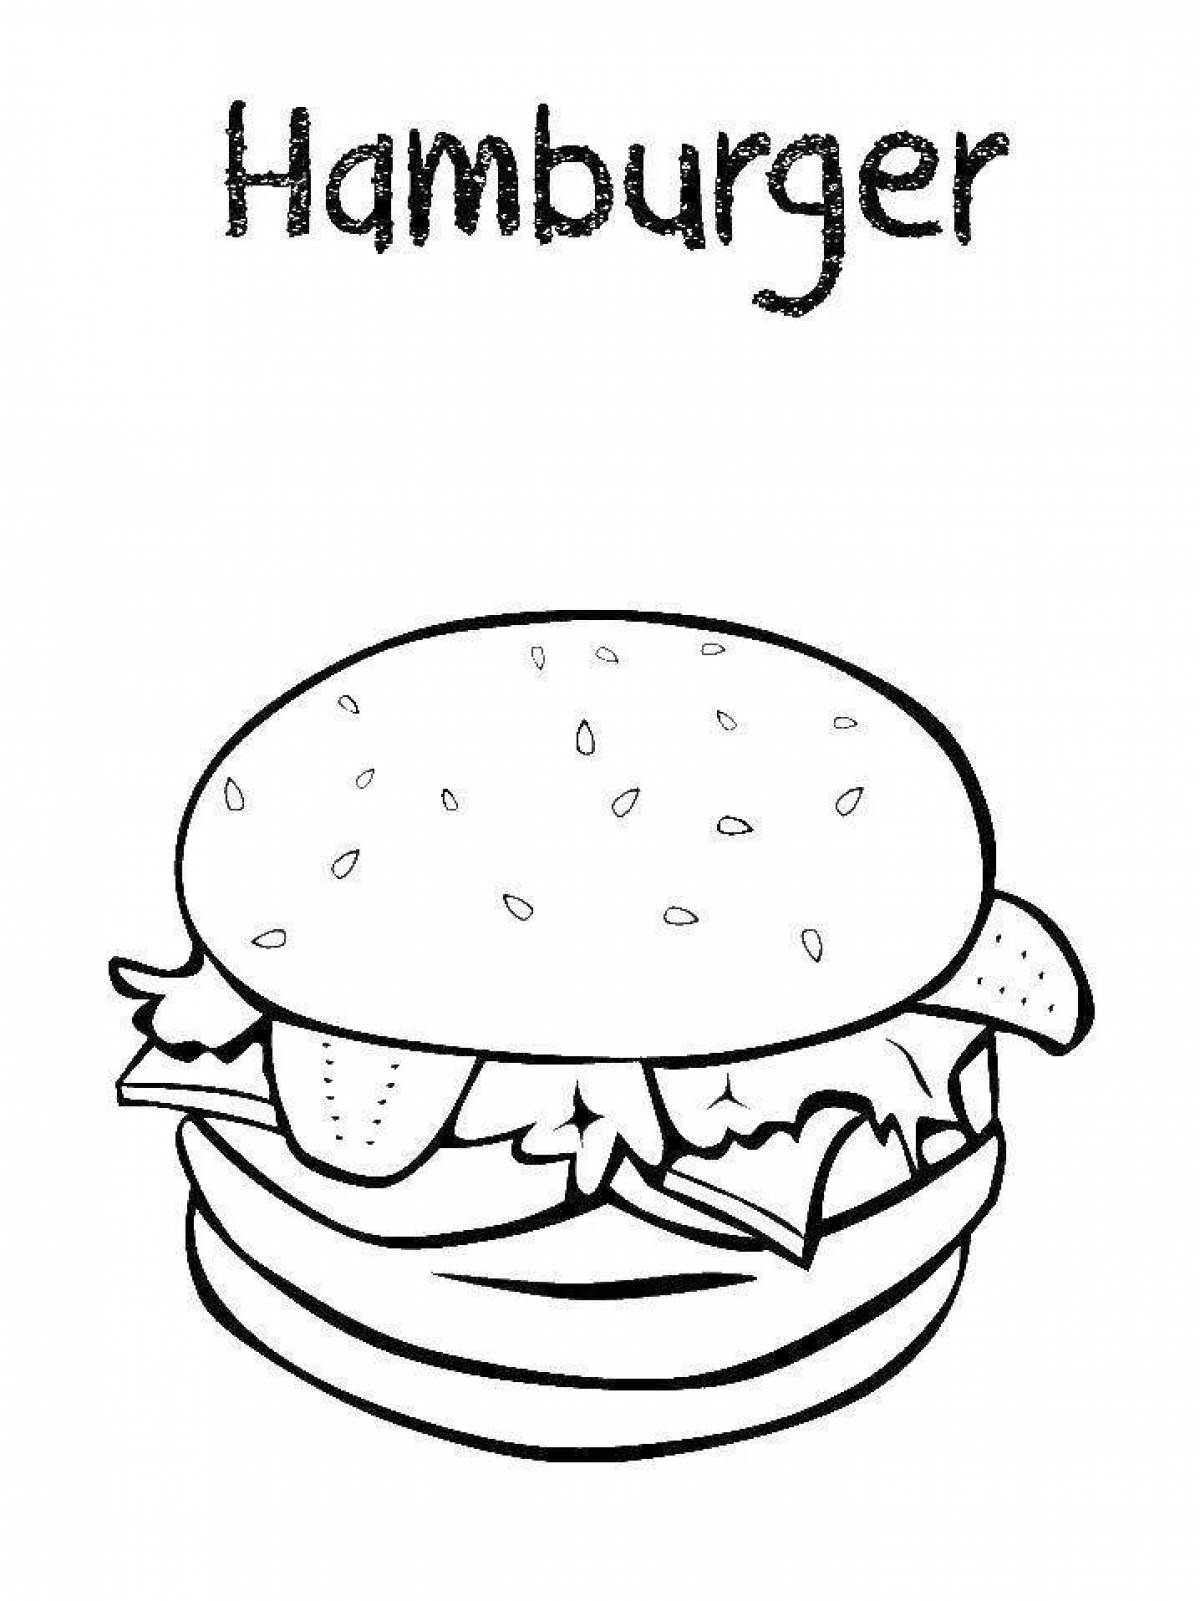 Fun hamburger coloring book for kids